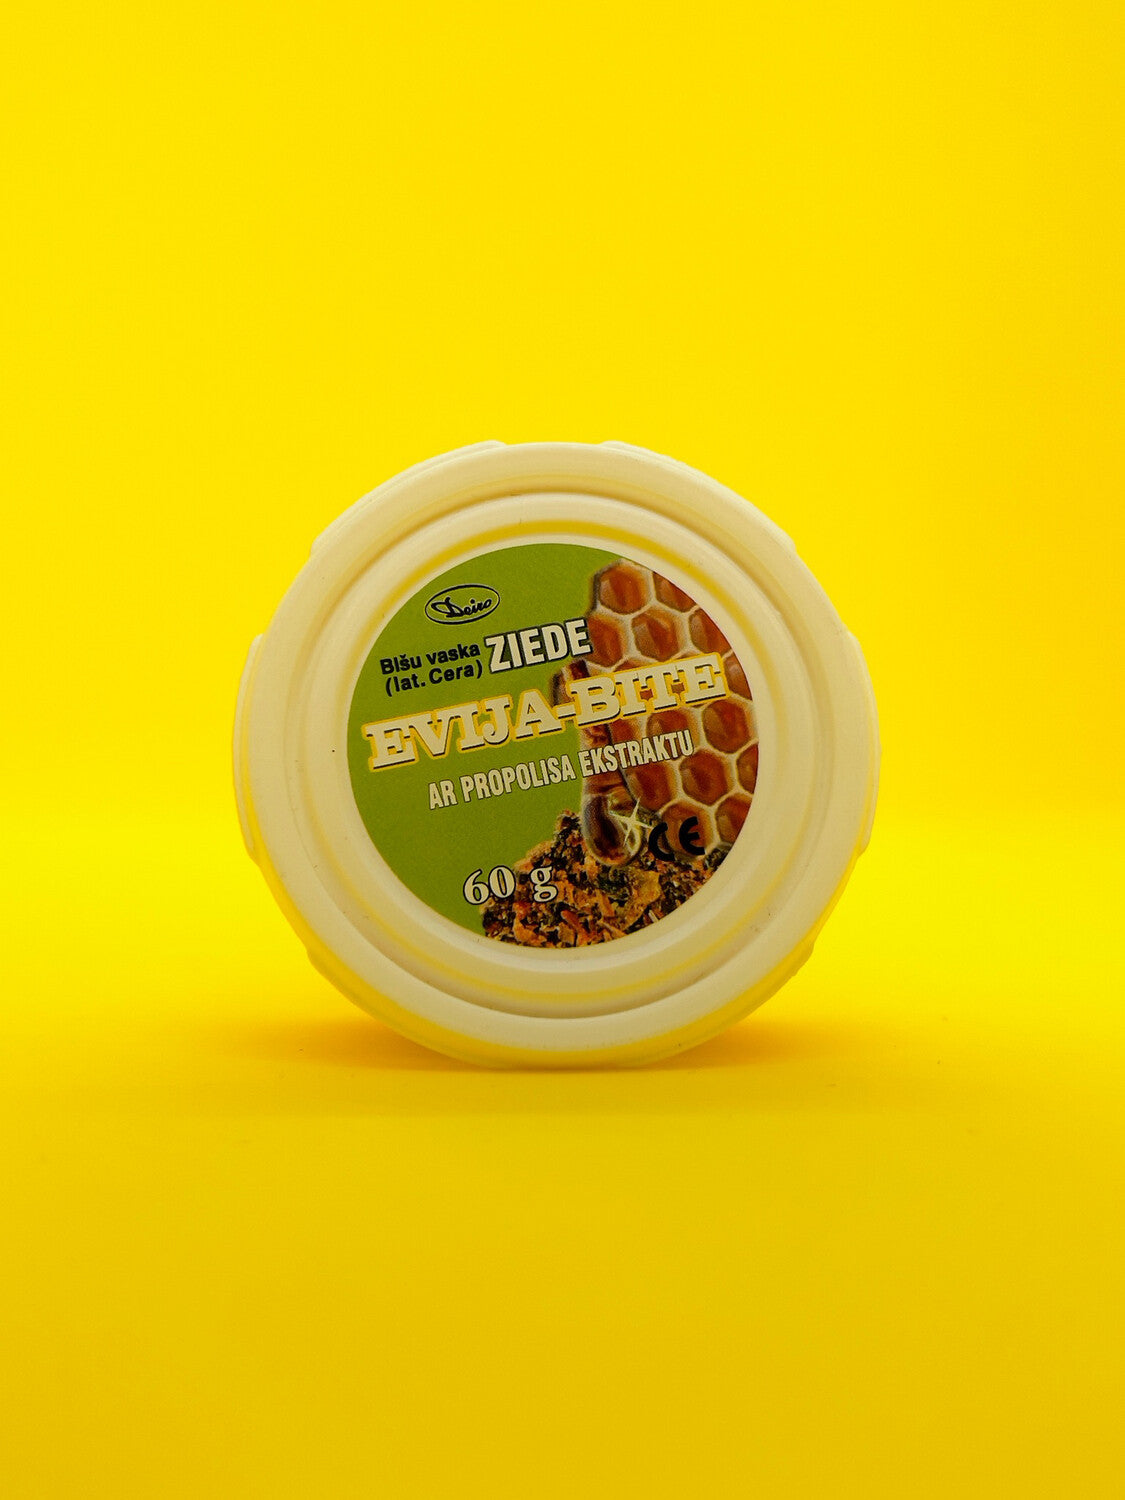 Мазь пчелиный воск "Evija-Bite" с экстрактом прополиса 60г